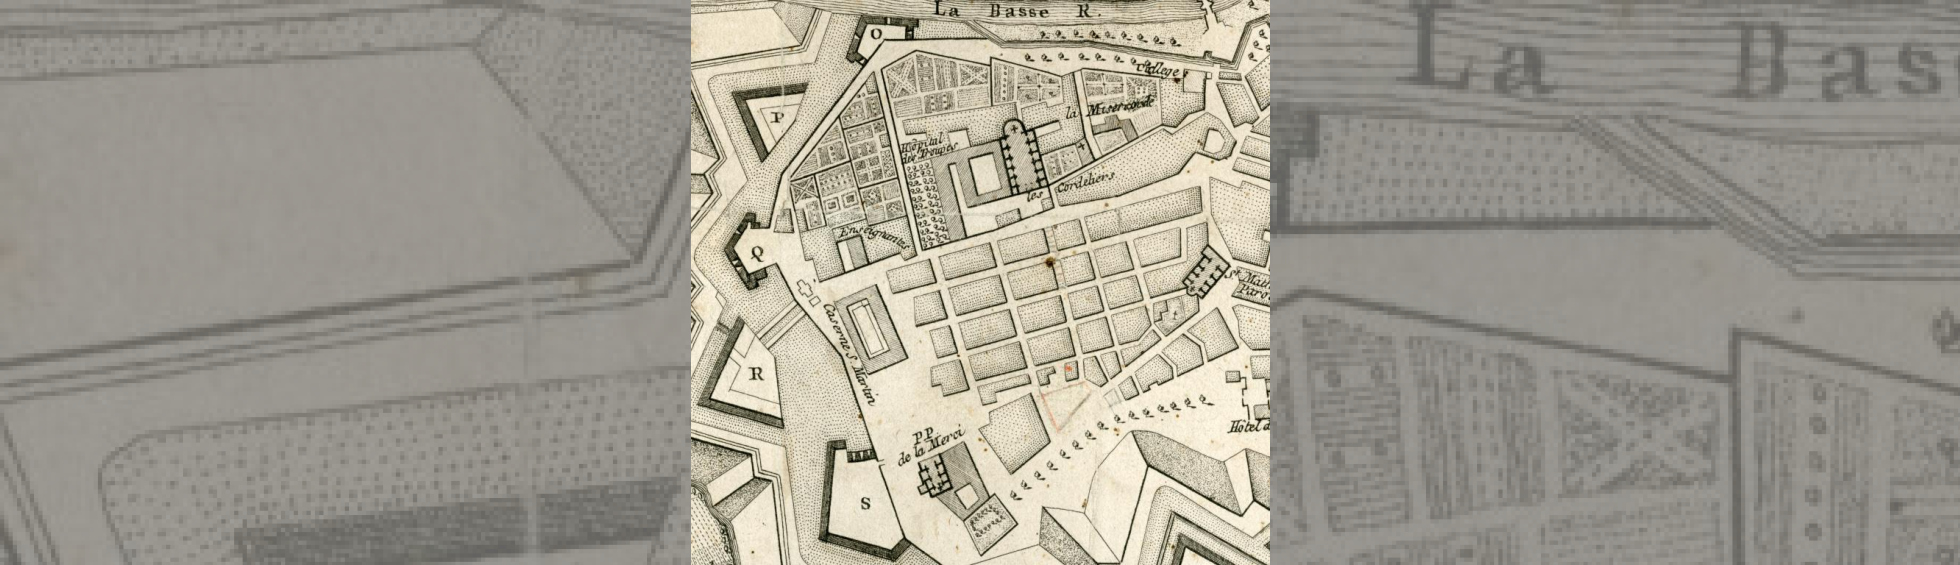 Plan montrant en haut le couvent des franciscains et ses jardins;en bas le quadrillage  des rues ; à gauche les remparts